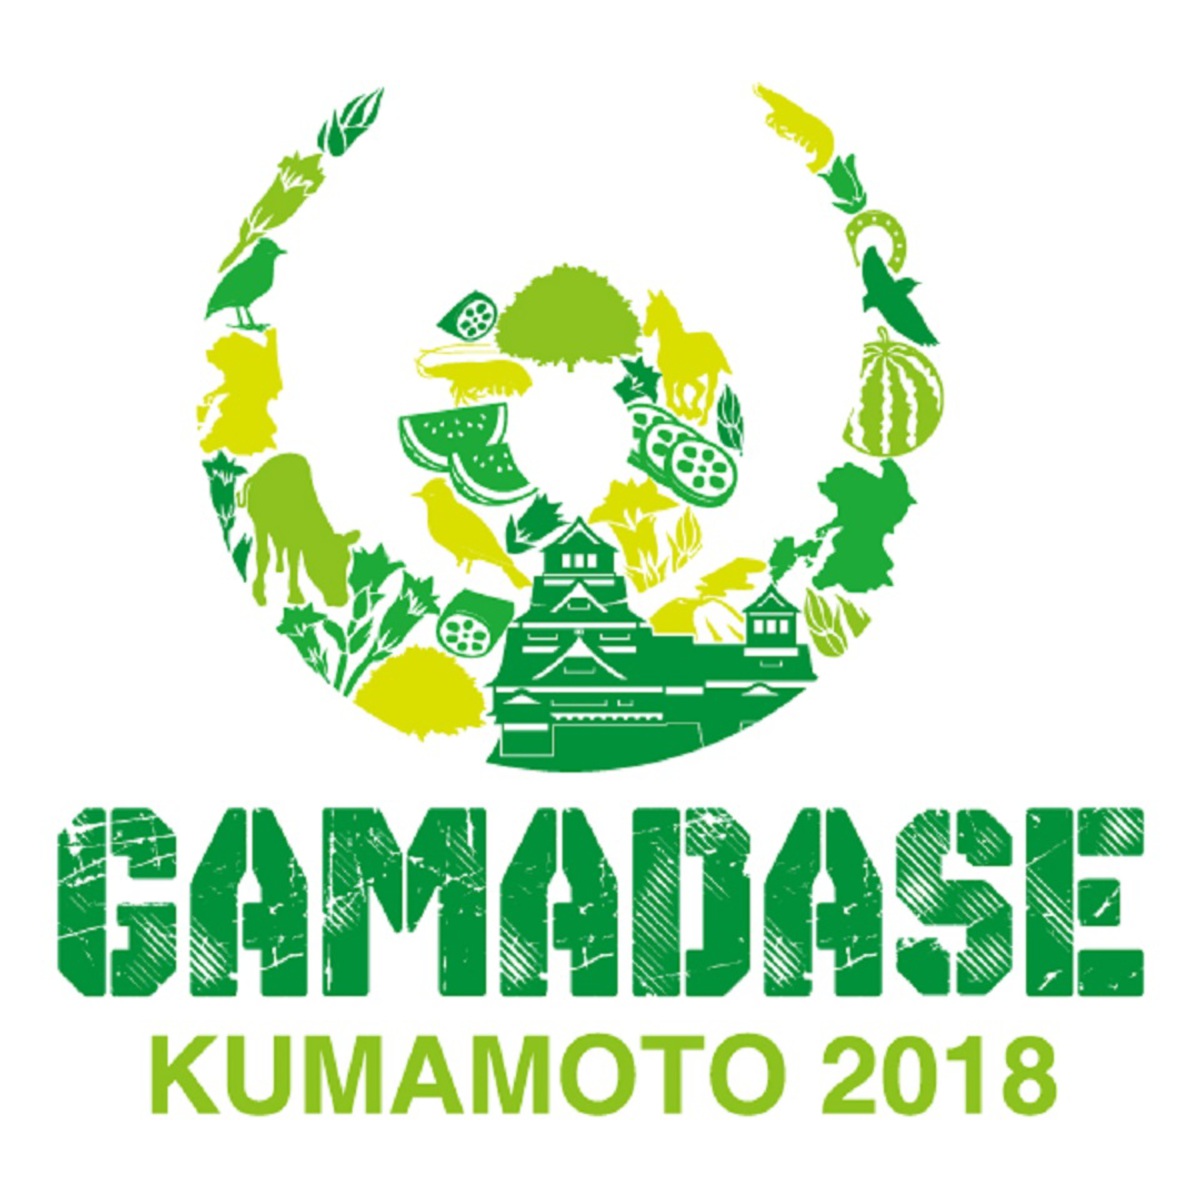 マンウィズ Keytalk ホルモン Brahman 四星球ら 熊本にて4 14 15に行われる復興イベント Gamadase Kumamoto 18 に出演決定